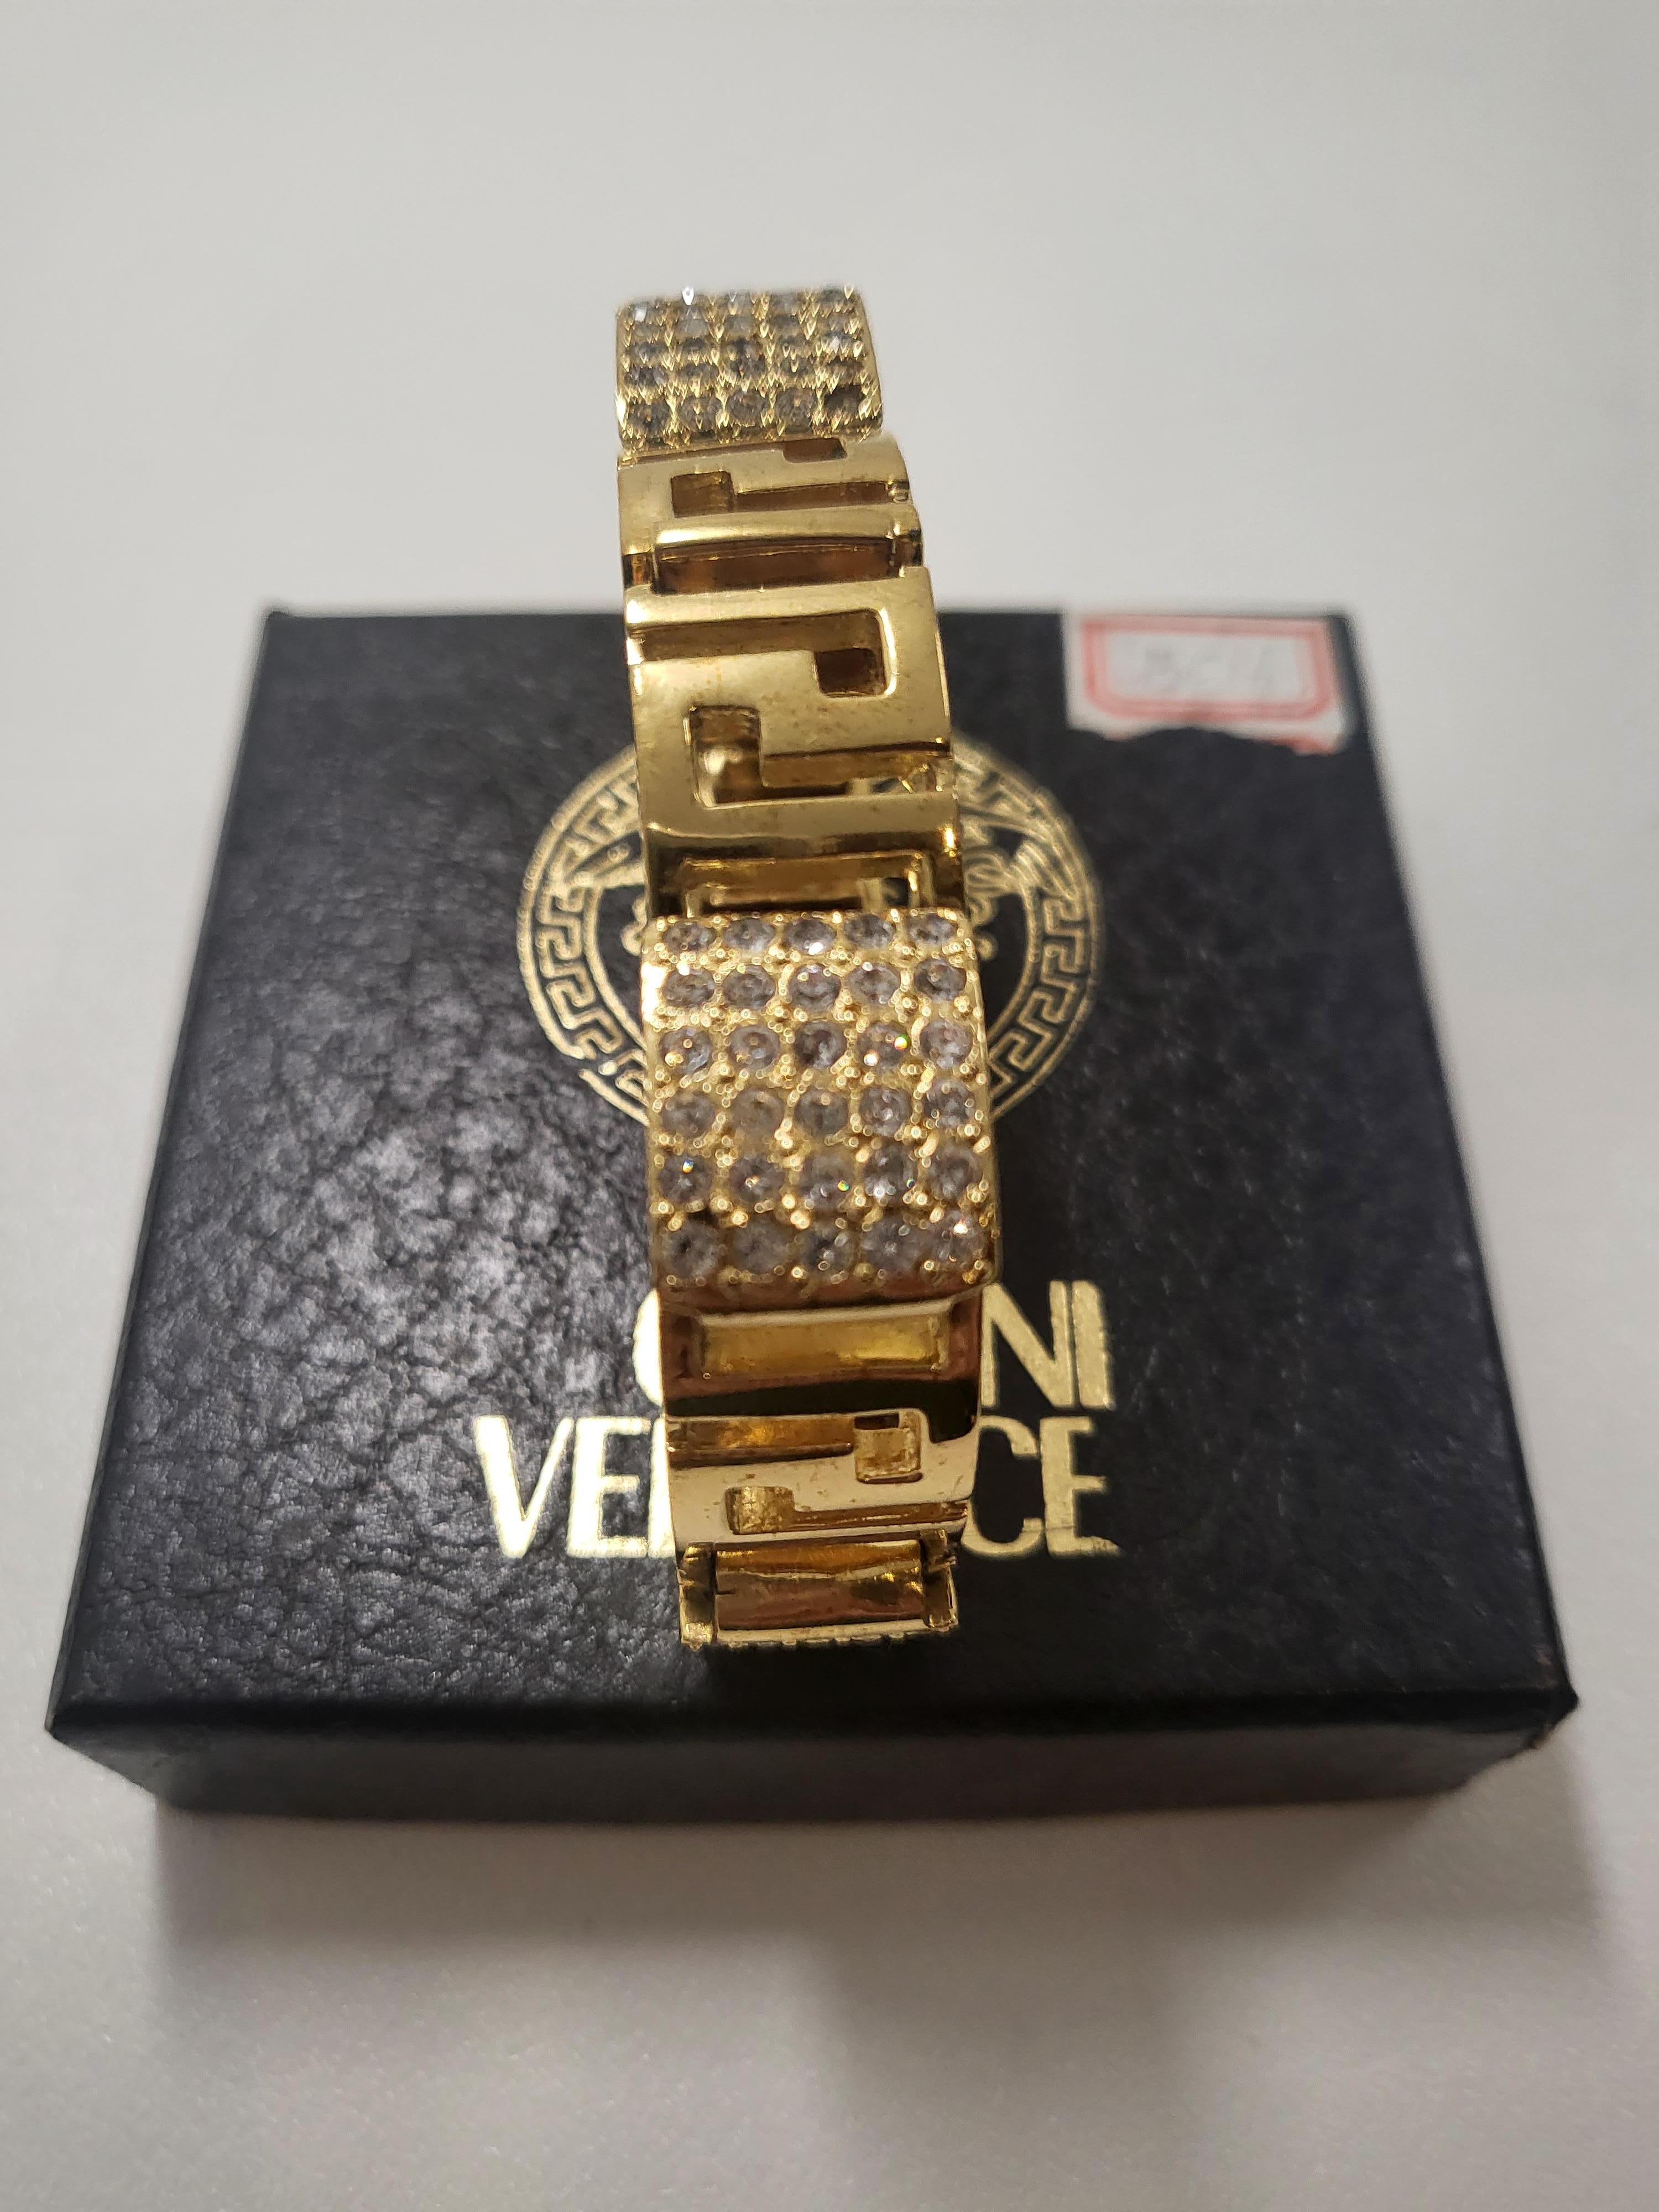 Adéntrate en el mundo del glamour vintage con la pulsera Gianni Versace Gold Rhinestones Greca Chunky Bracelet de los años 90, una obra maestra atemporal que encierra la opulencia y el estilo icónico de la época. Elaborada con meticulosa atención al